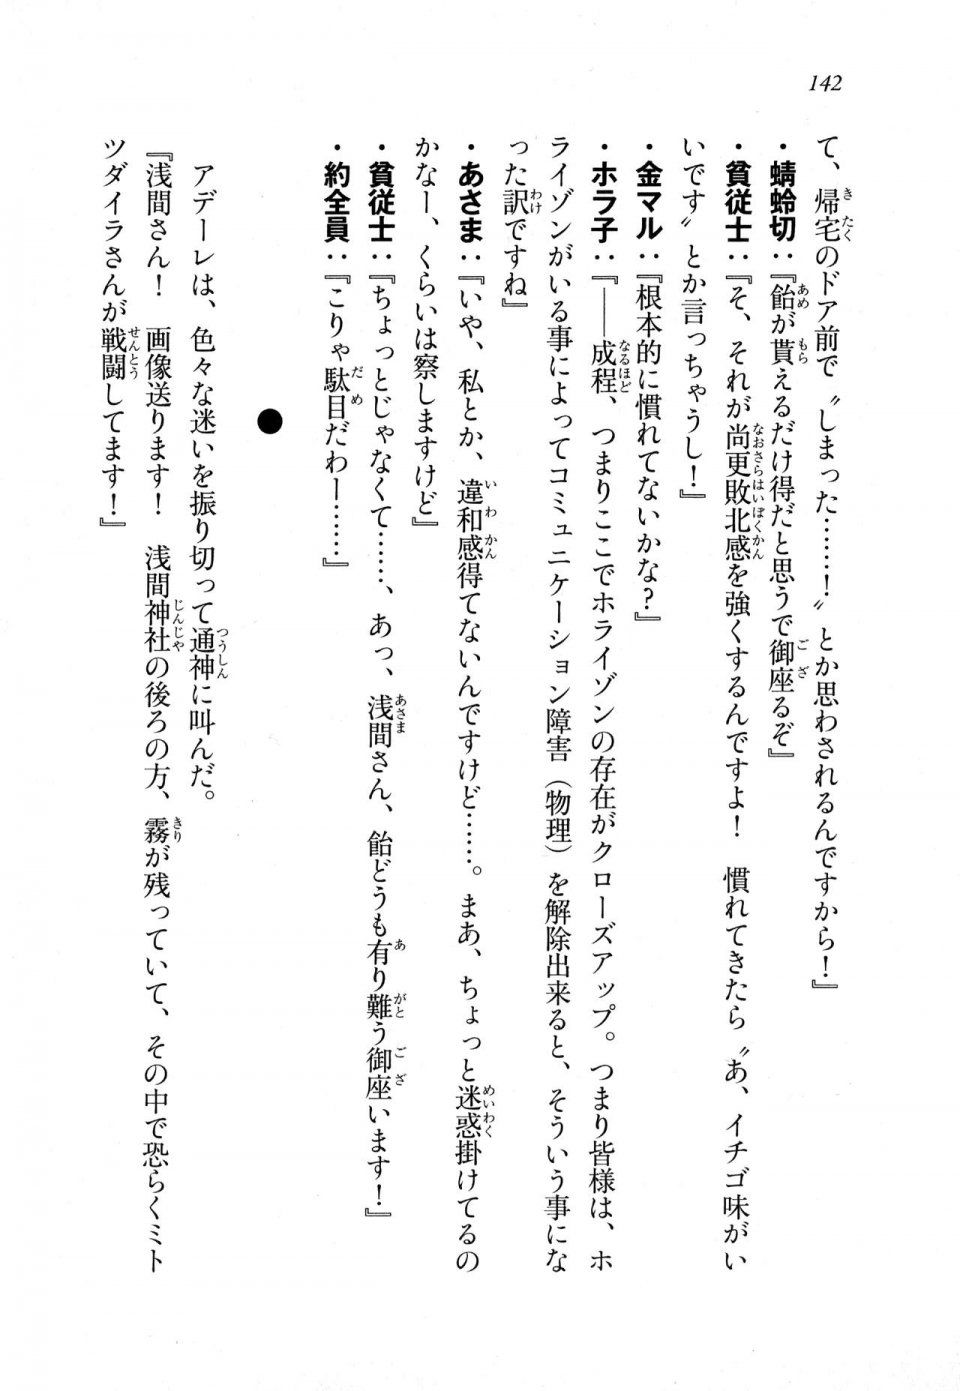 Kyoukai Senjou no Horizon LN Sidestory Vol 1 - Photo #140